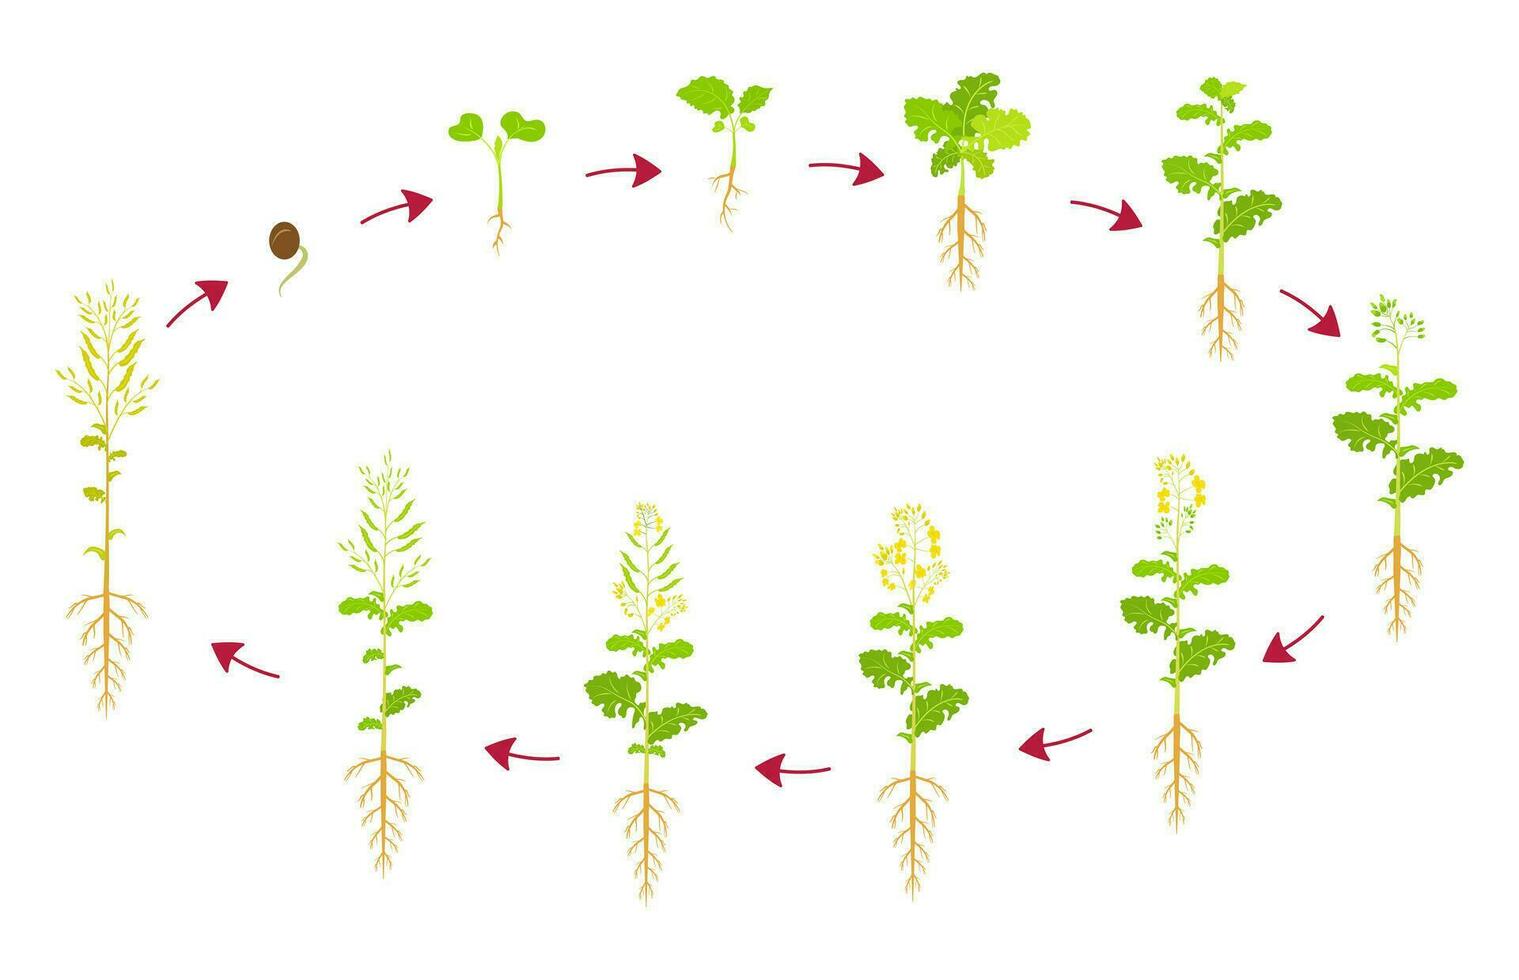 canola crescita ciclo. sviluppo fasi di colza siamo a partire dal seme per raccolto. in crescita semi oleosi raccolti. vettore